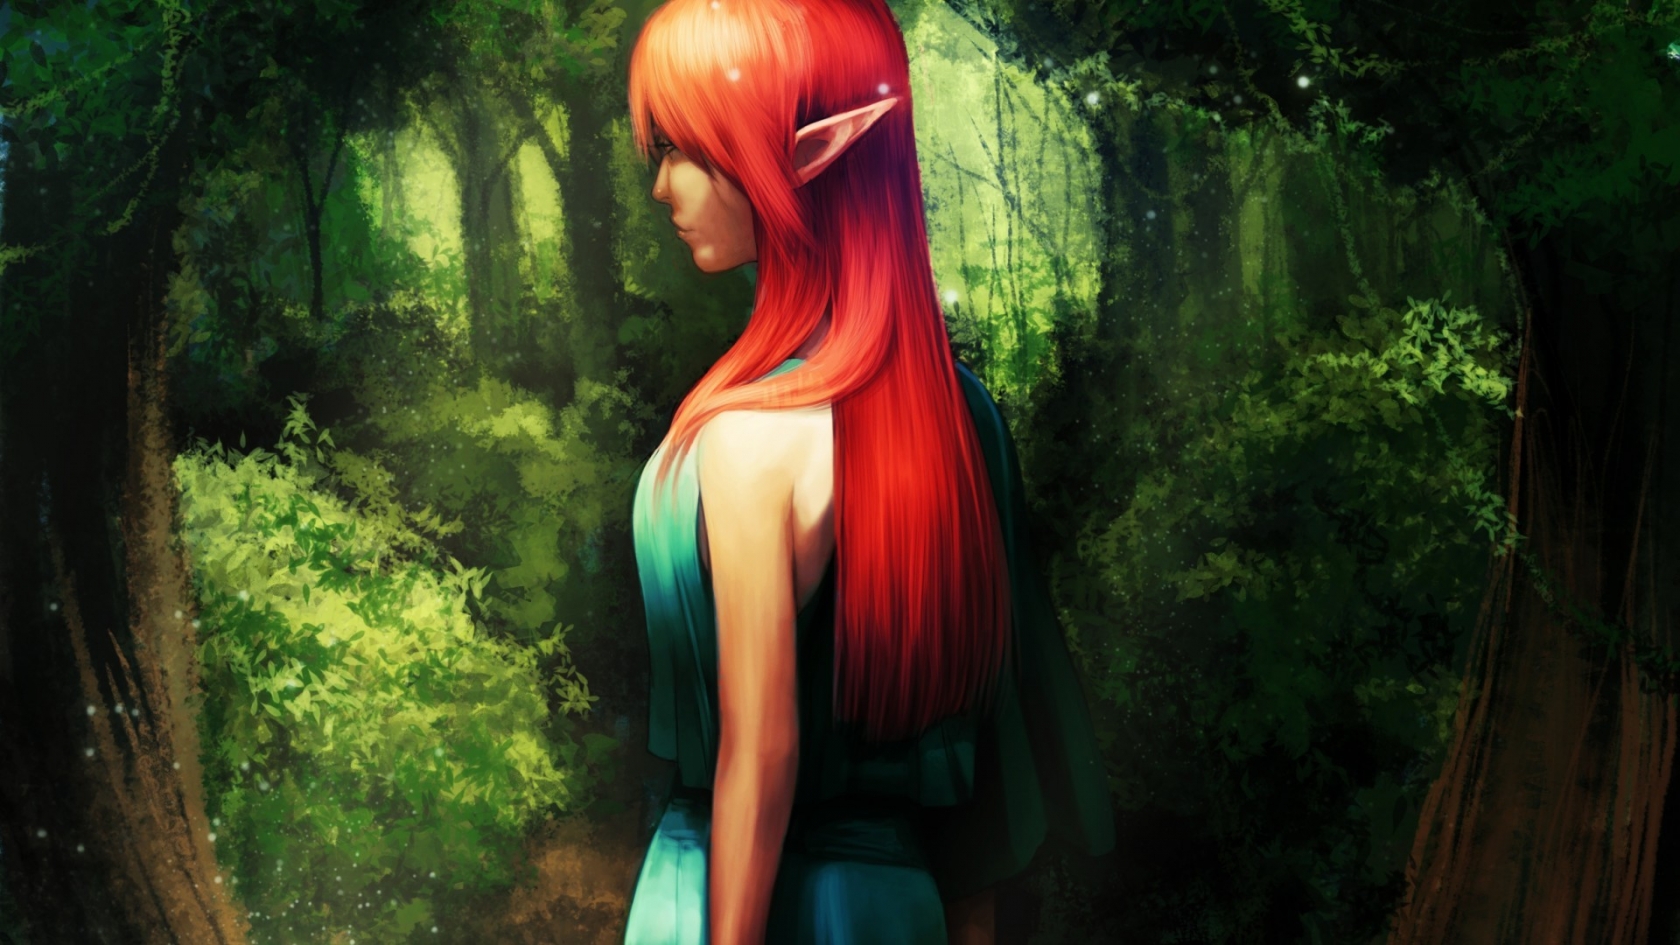 Red Hair Anime Girl for 1680 x 945 HDTV resolution